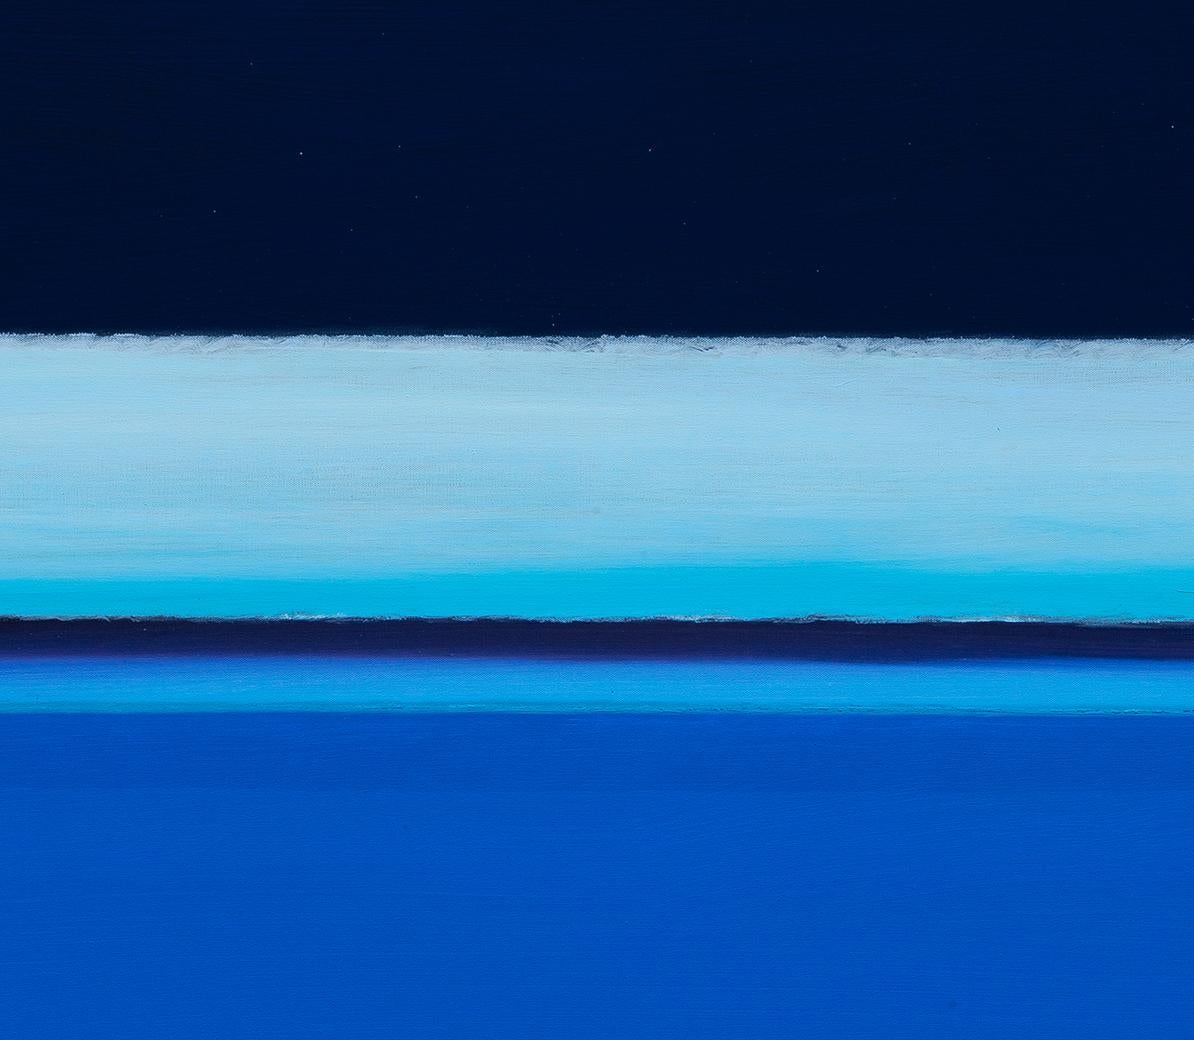 River of Dreams II : peinture de paysage abstrait avec eau bleue et ciel nocturne - Painting de Joseph McAleer